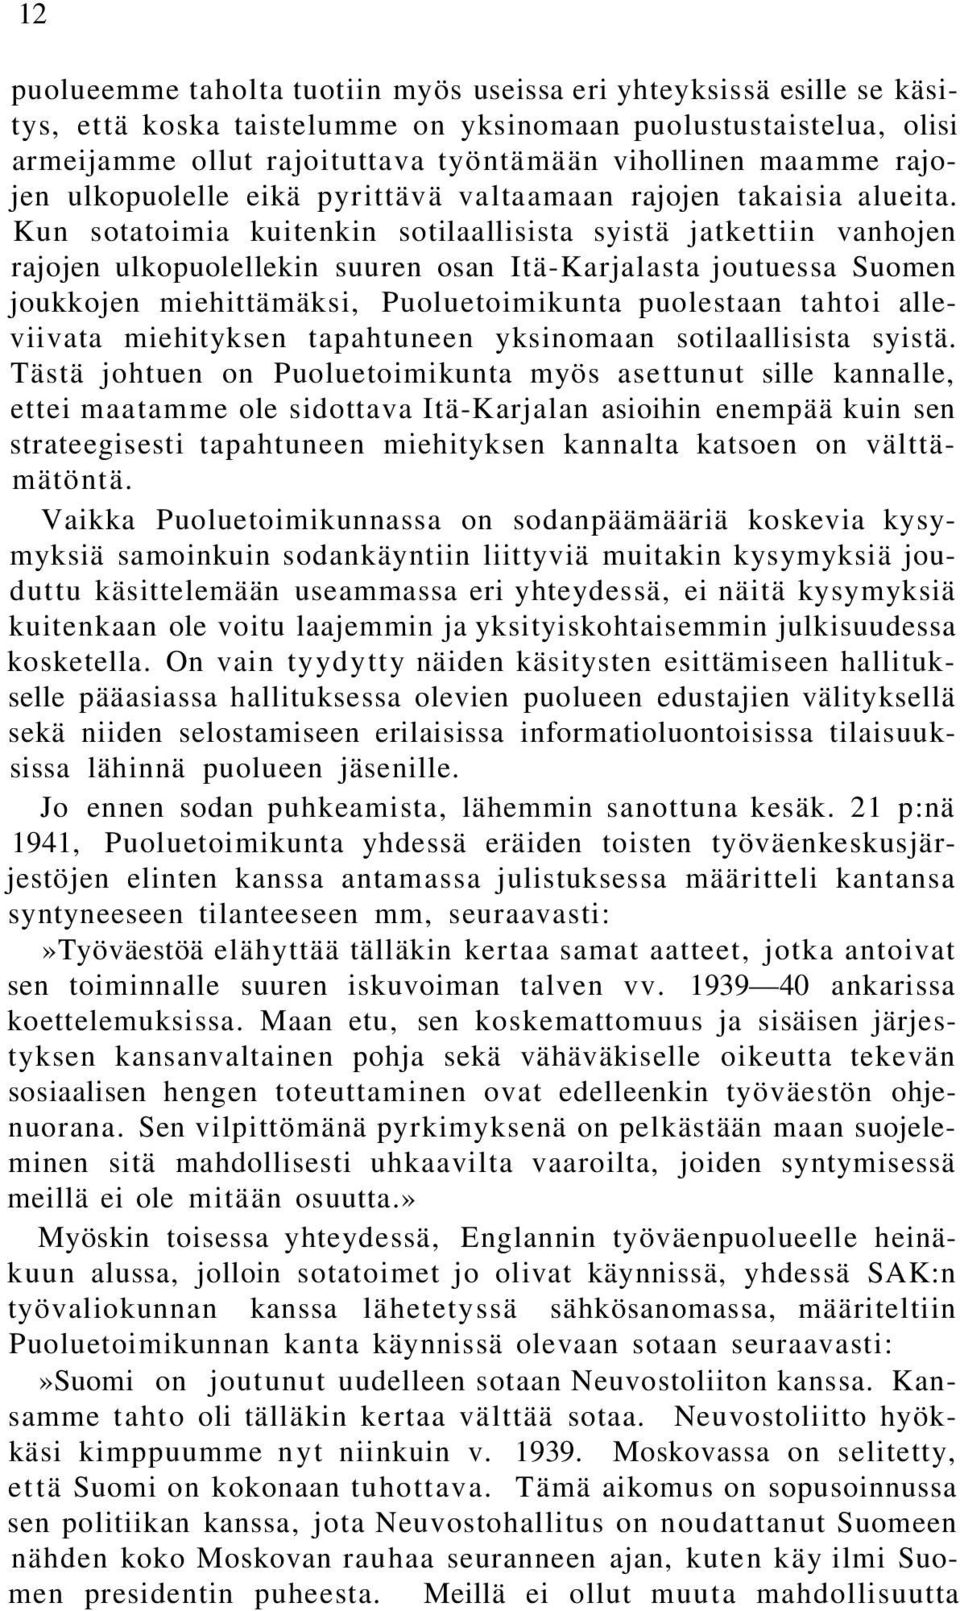 Kun sotatoimia kuitenkin sotilaallisista syistä jatkettiin vanhojen rajojen ulkopuolellekin suuren osan Itä-Karjalasta joutuessa Suomen joukkojen miehittämäksi, Puoluetoimikunta puolestaan tahtoi